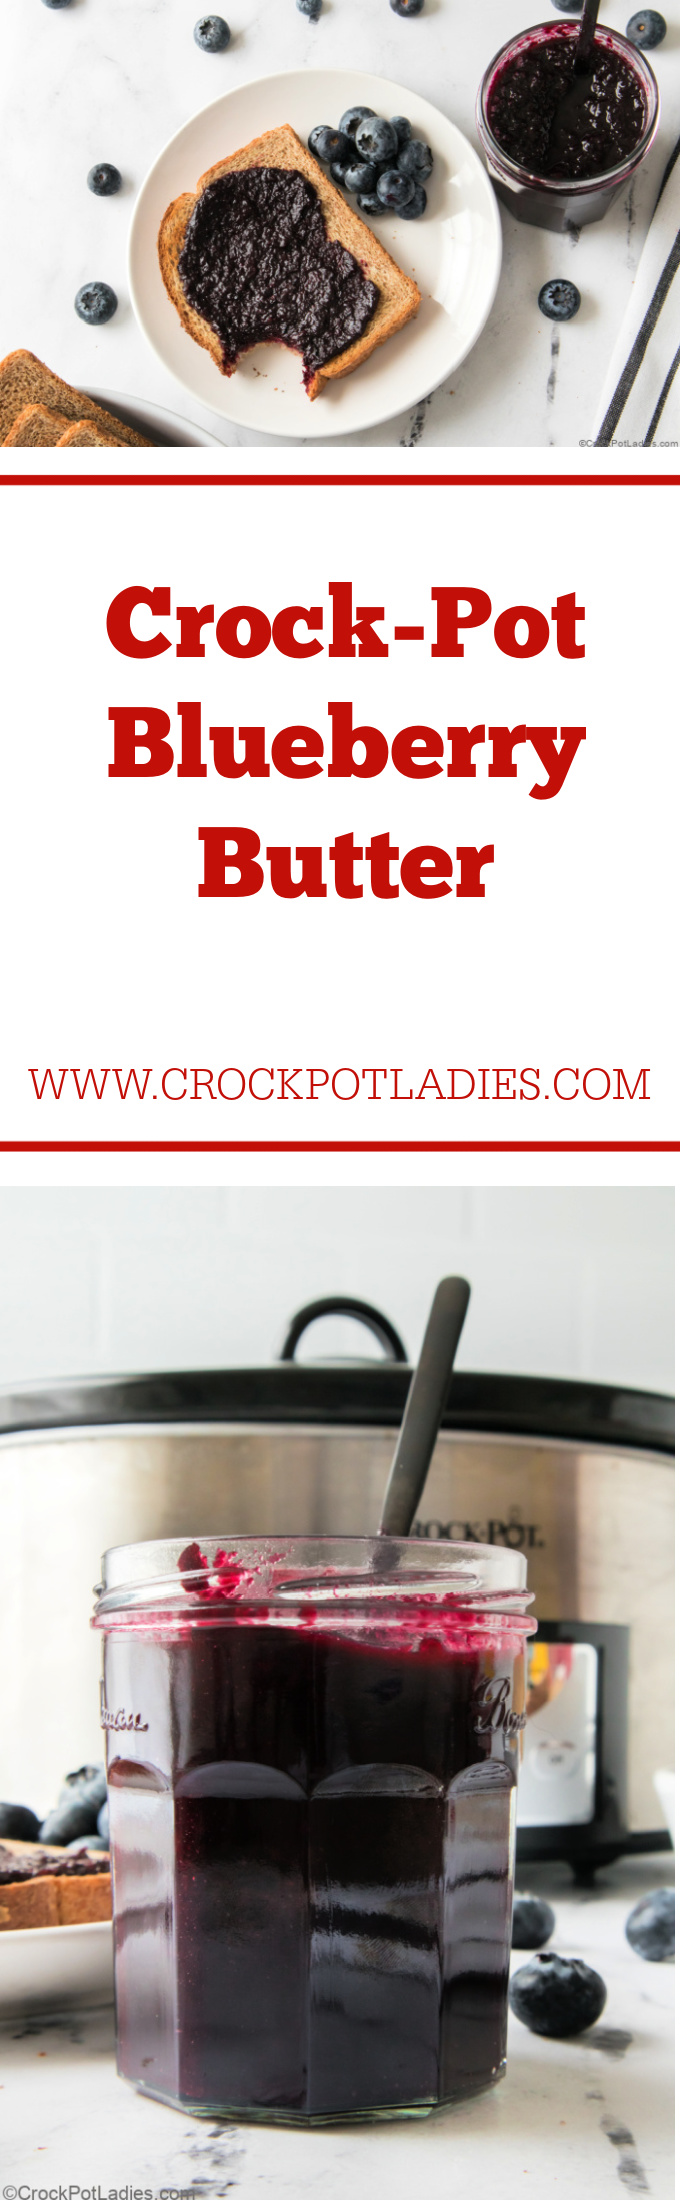 Crock-Pot Blueberry Butter